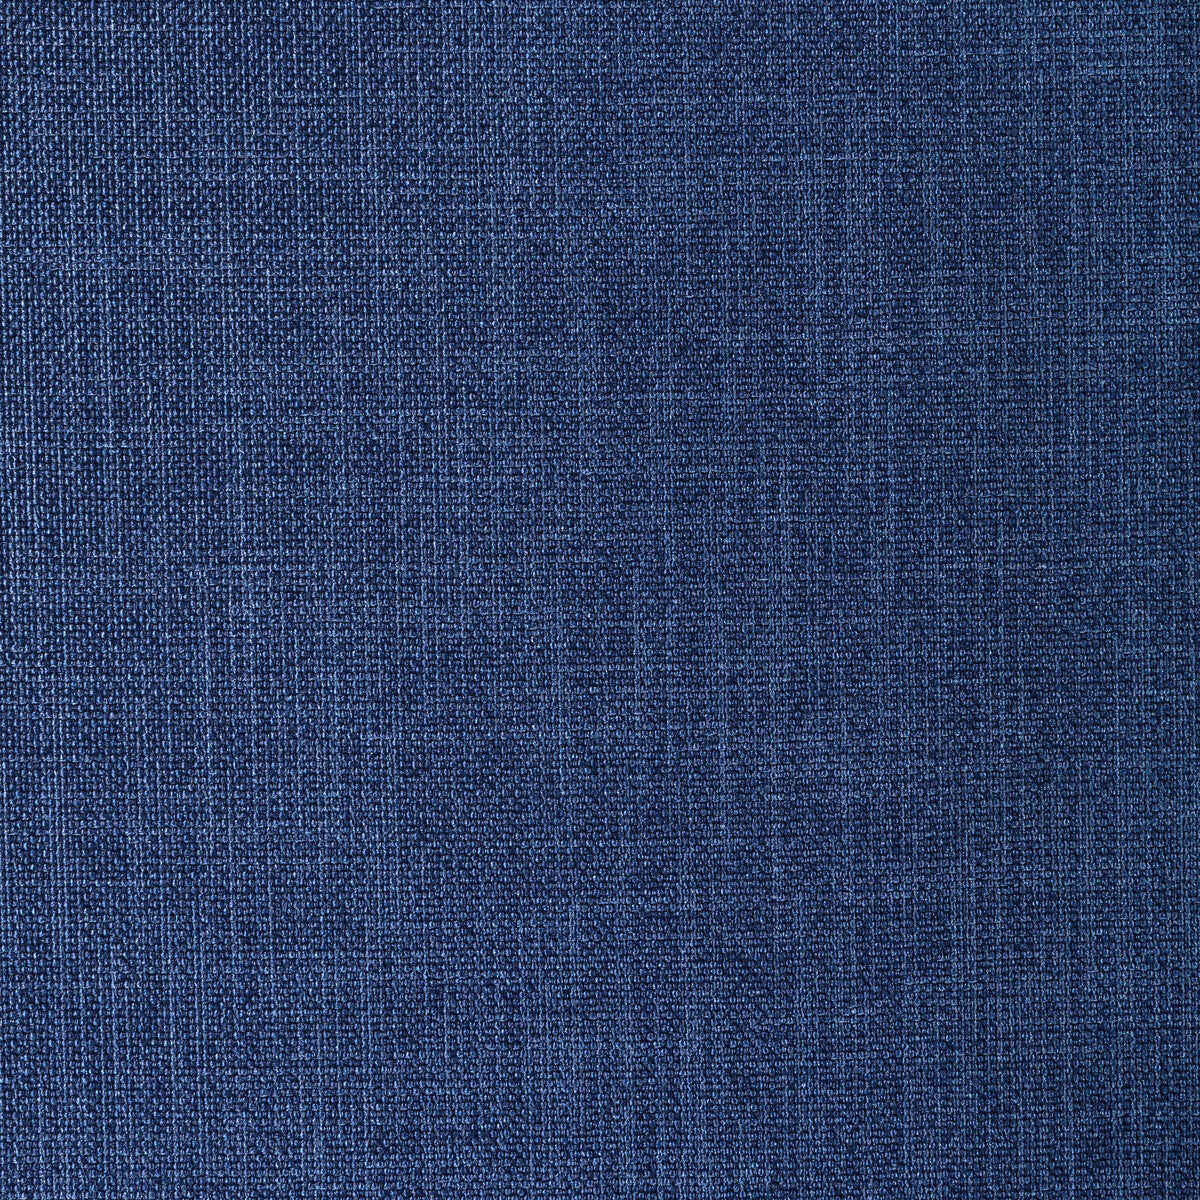 Kravet Basics fabric in 33120-55 color - pattern 33120.55.0 - by Kravet Basics